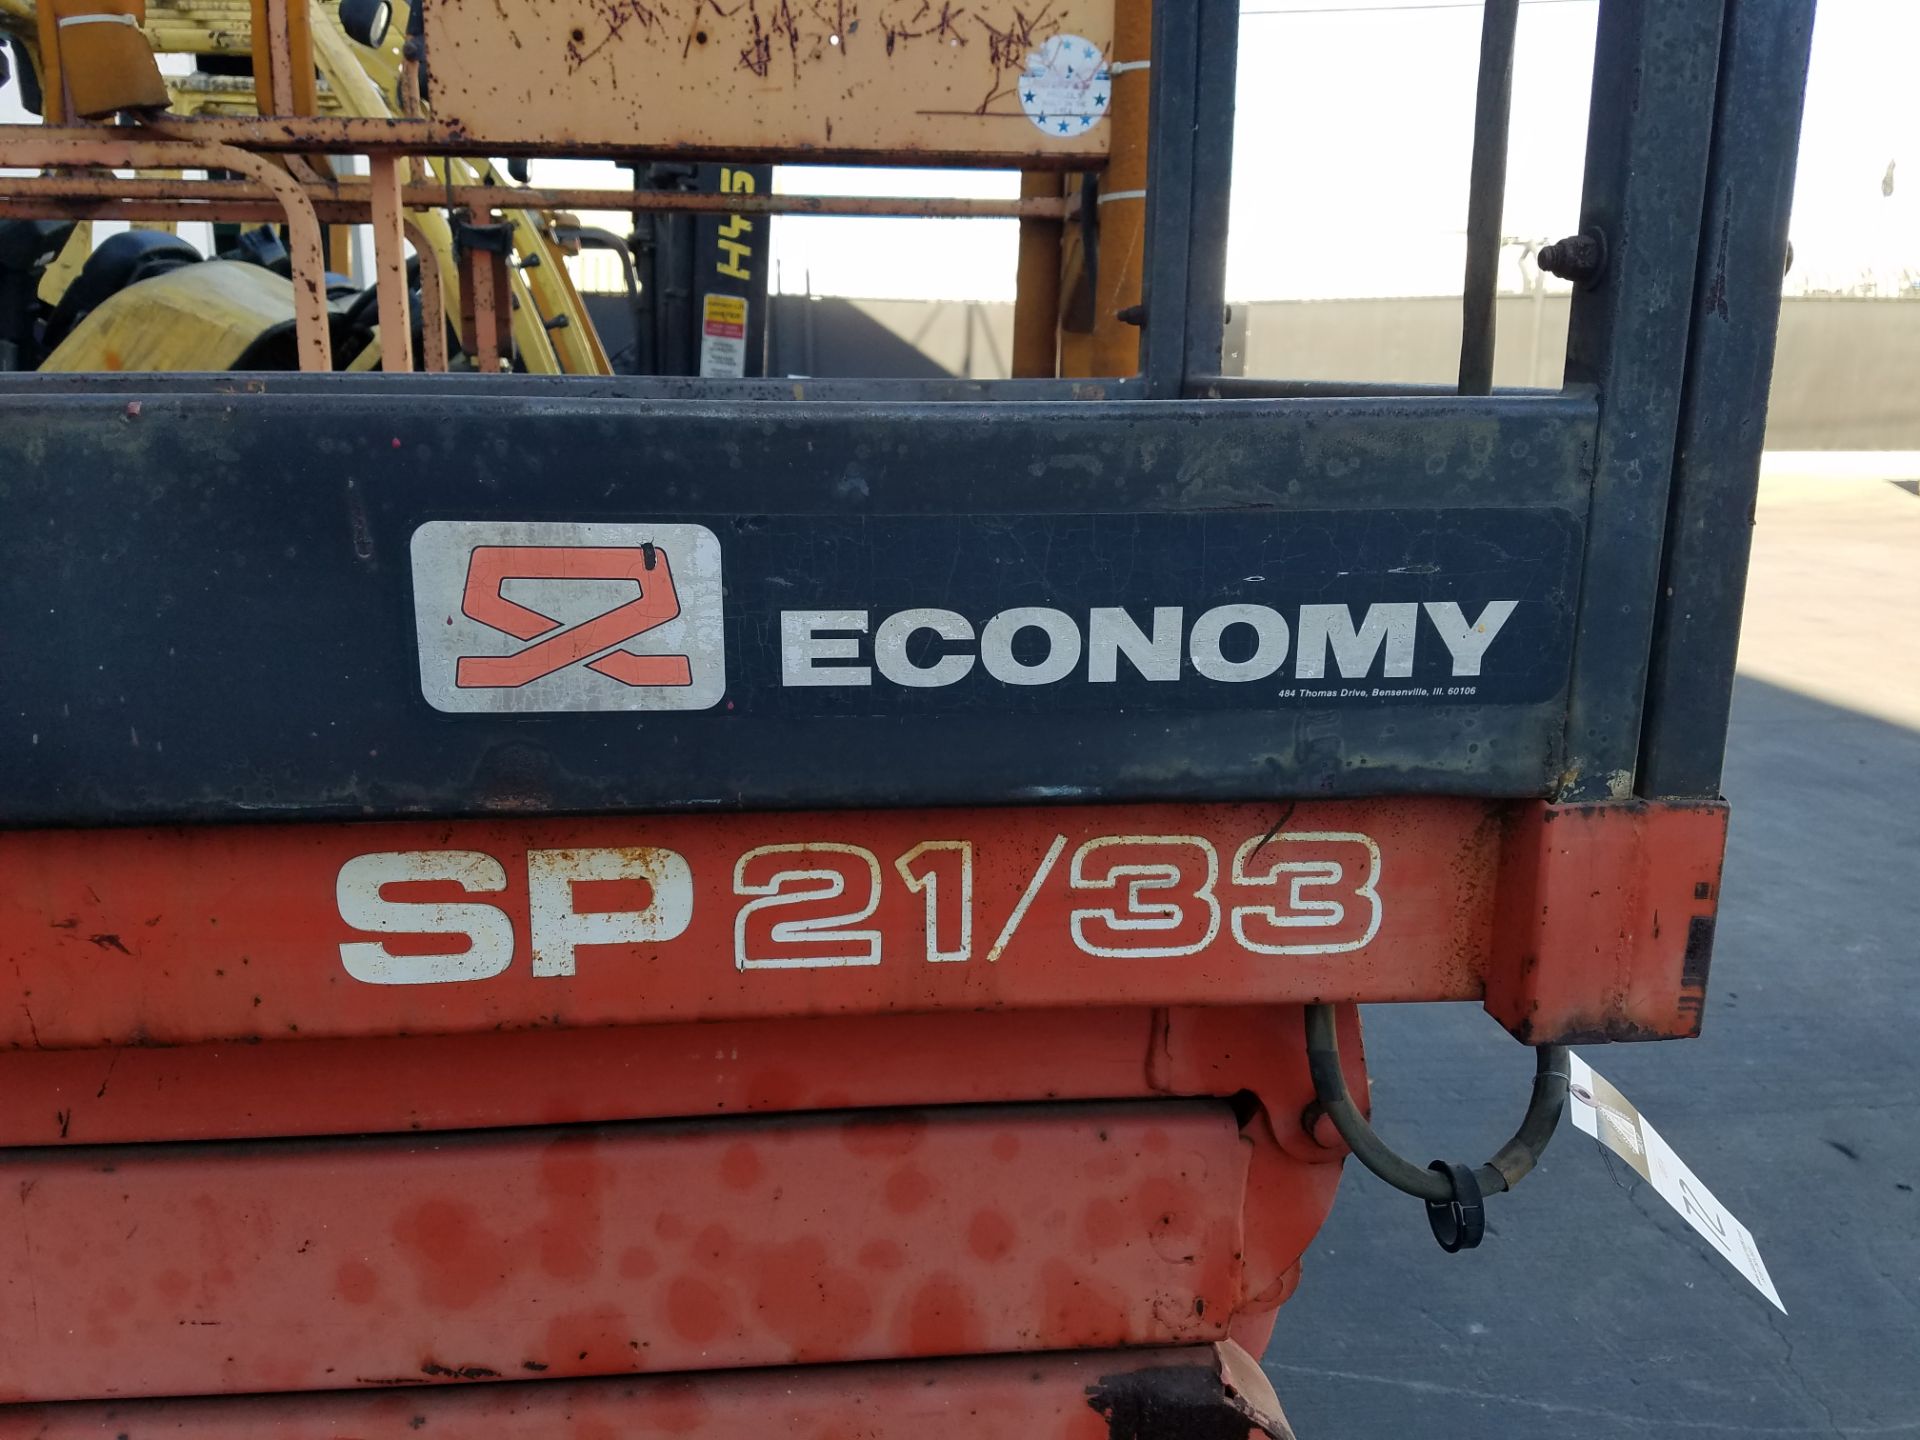 Economy Sp-21/33 Scissor Lift - Image 2 of 3